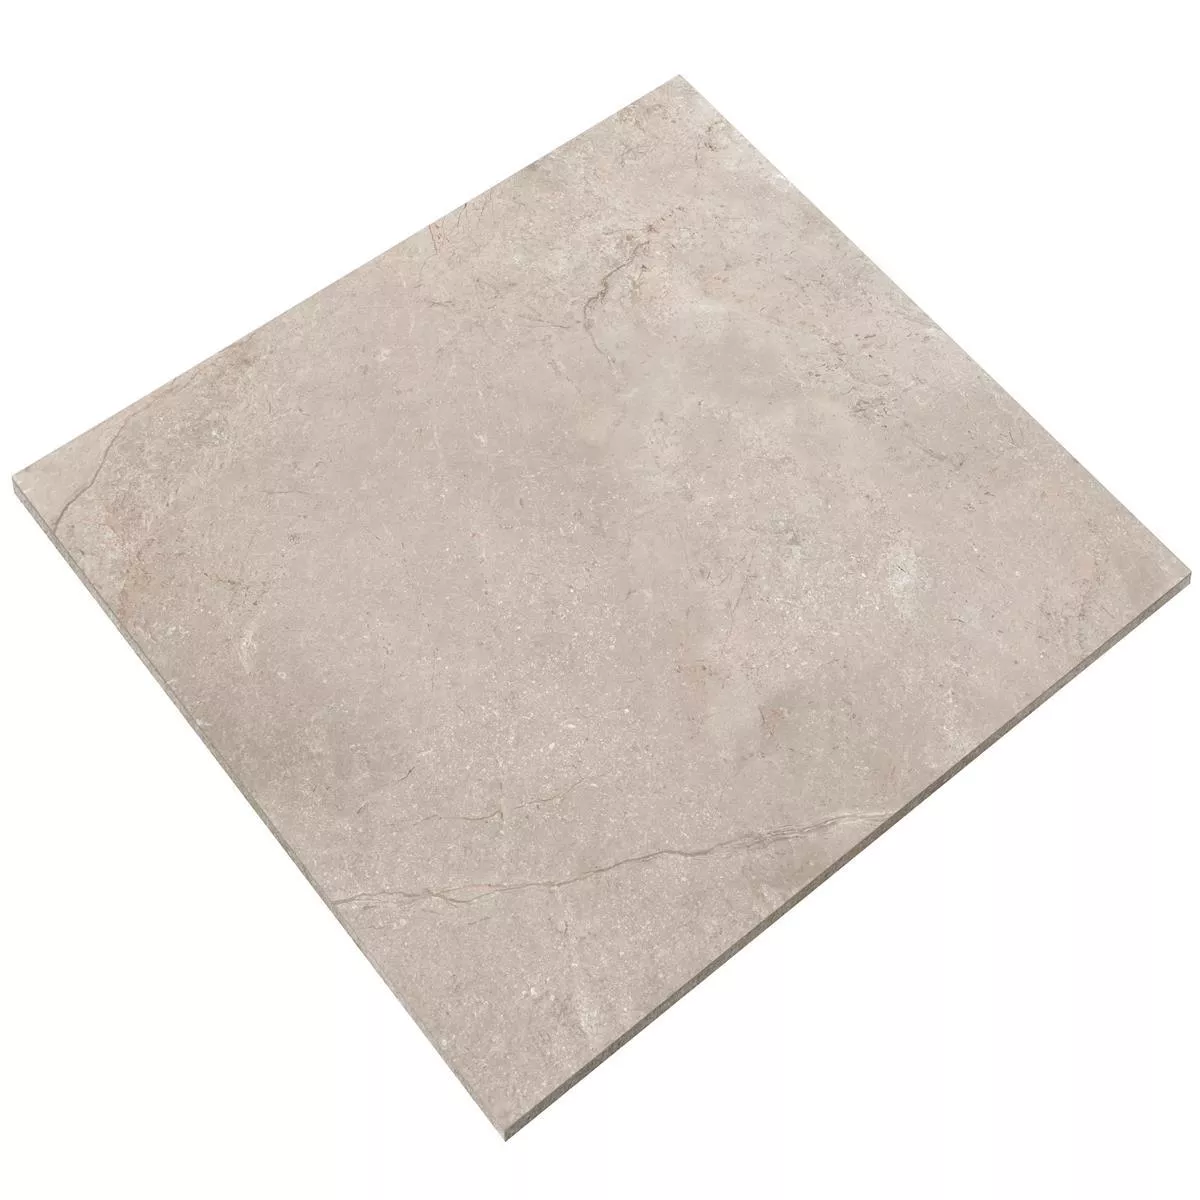 Sample Floor Tiles Pangea Marble Optic Mat Beige 120x120cm